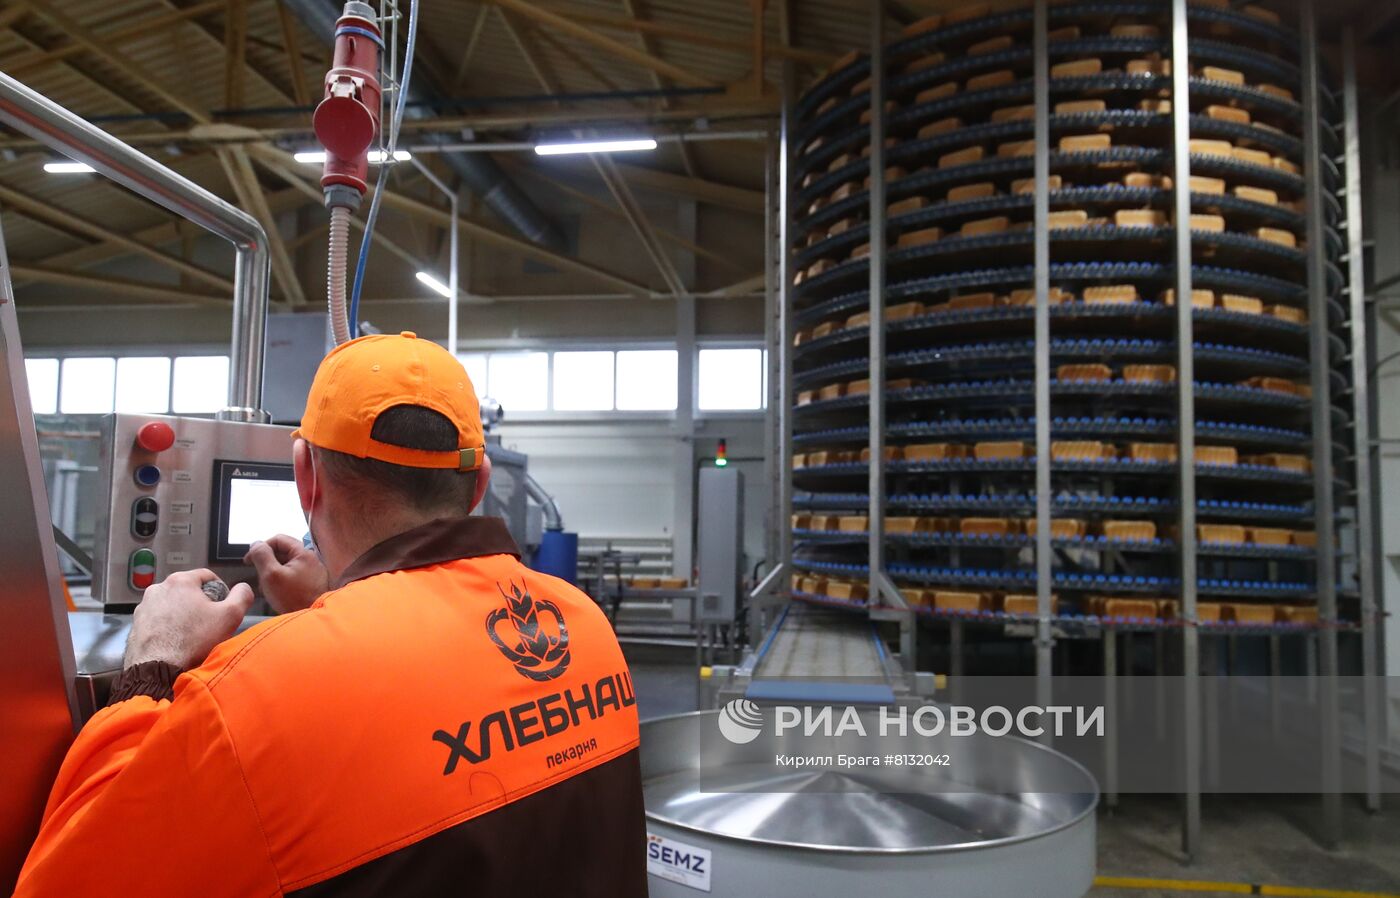 Производство хлебобулочных изделий в Волгоградской области